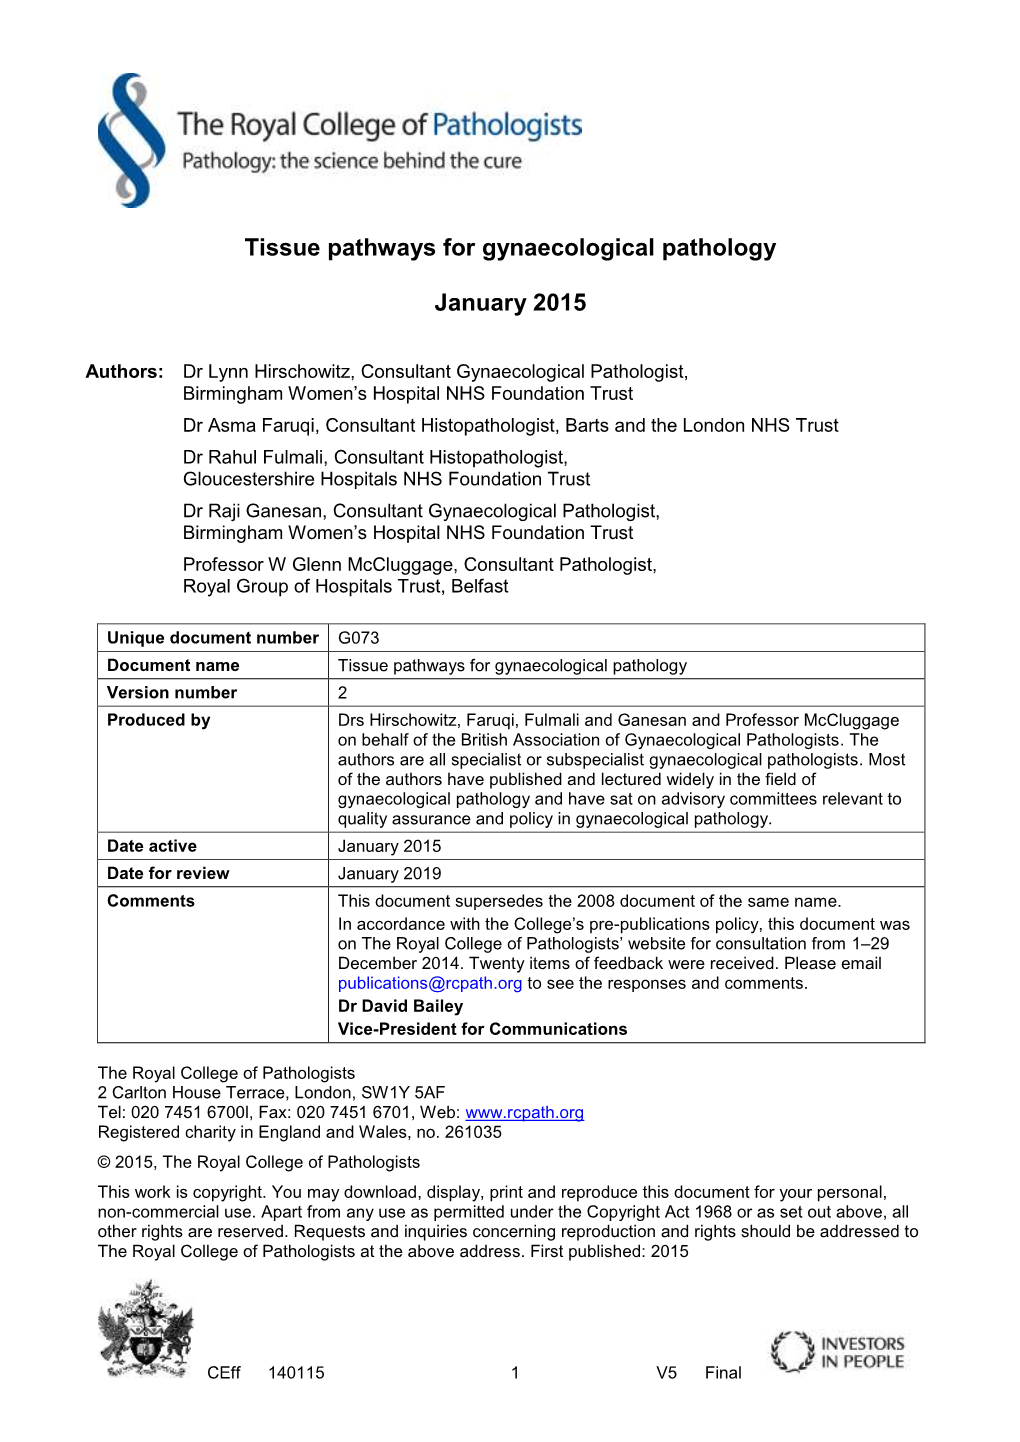 Tissue Pathways for Gynaecological Pathology January 2015